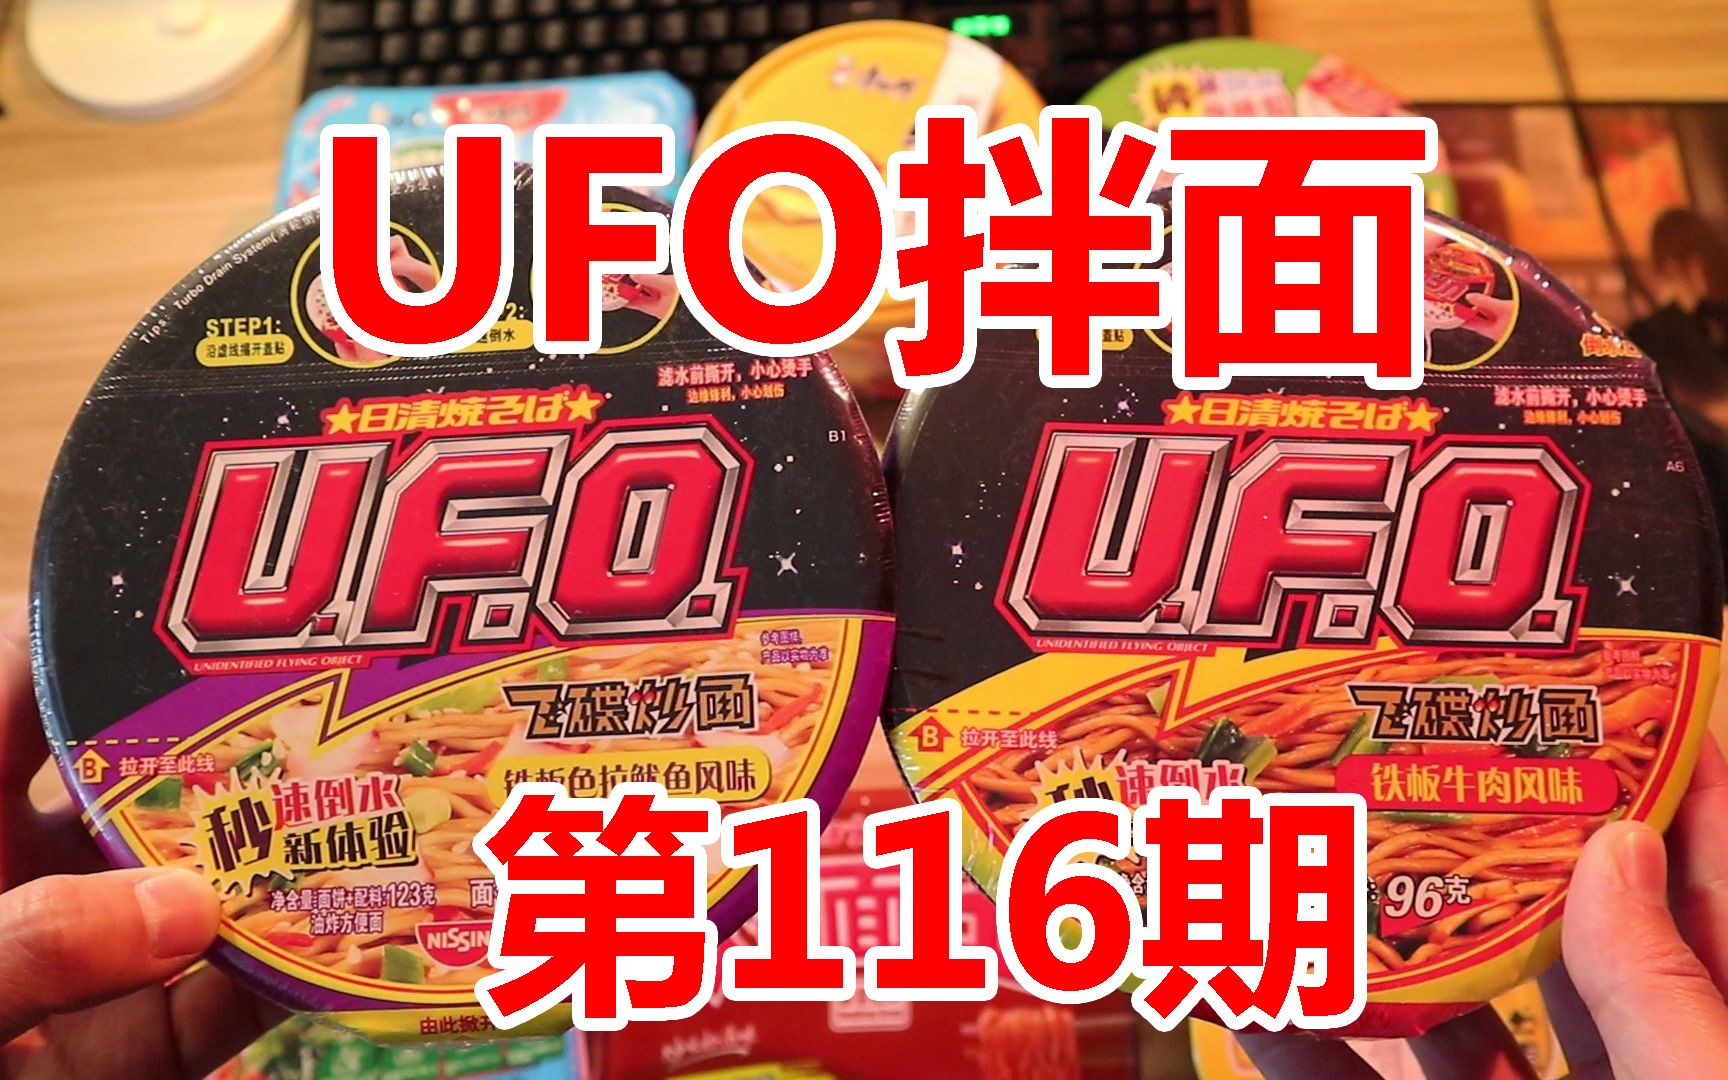 UFO铁板鱿鱼味和铁板牛肉味，哪个更好吃？